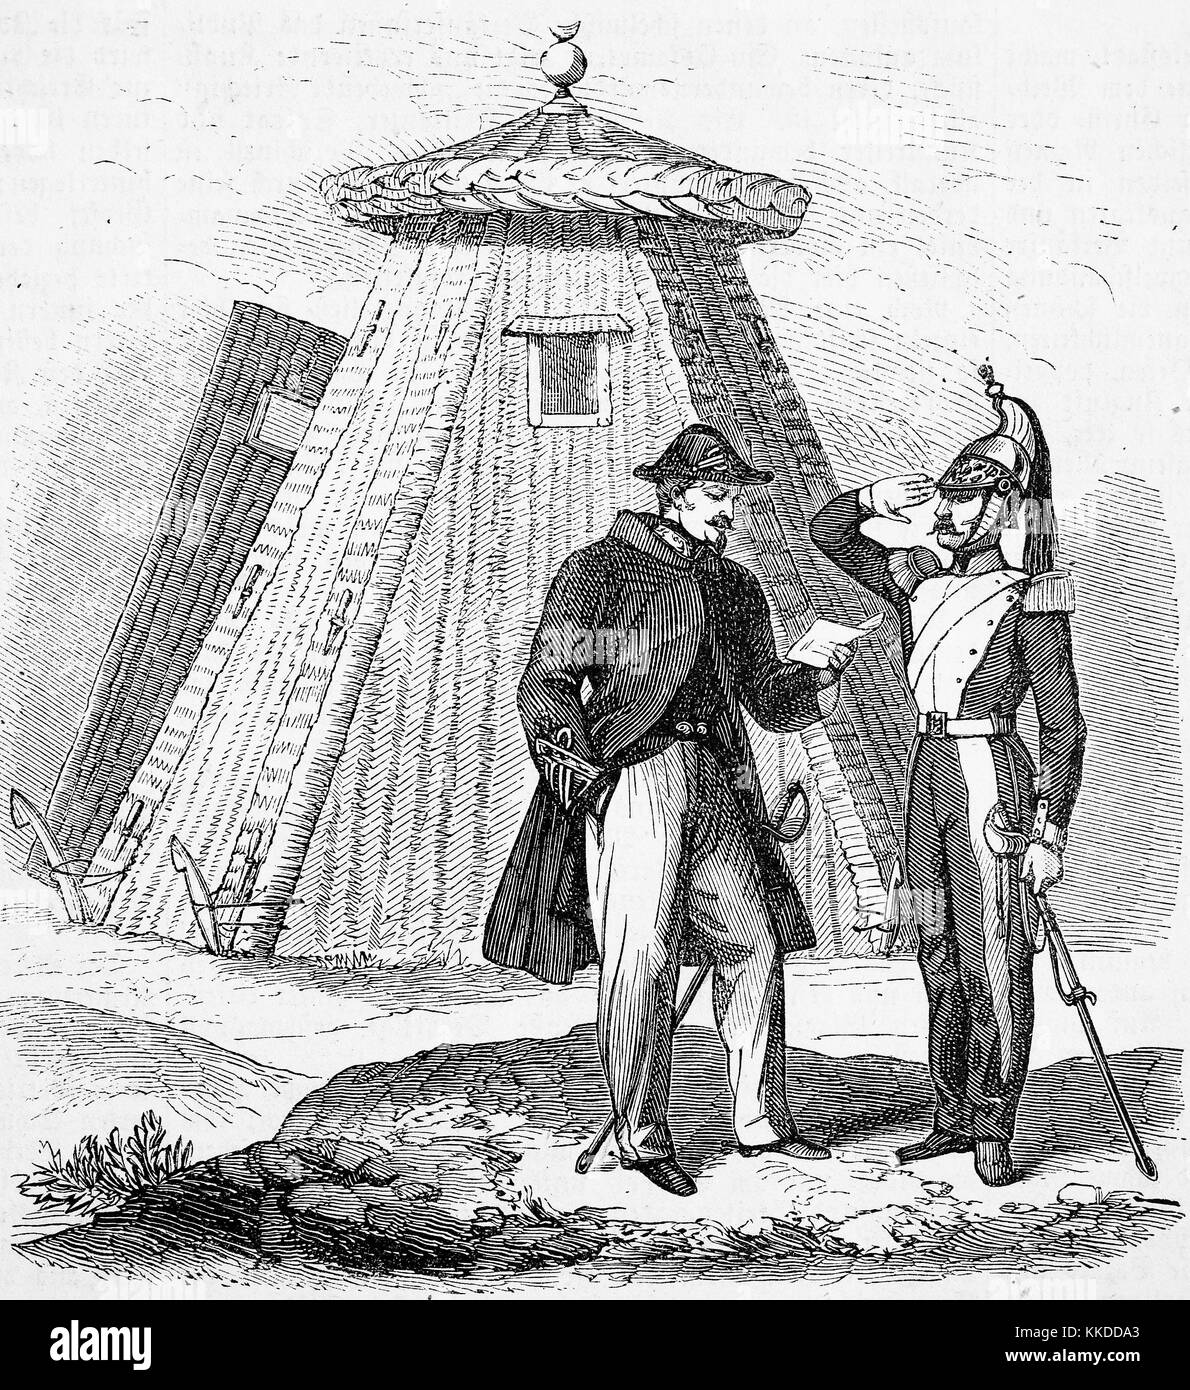 Le nouveau type de tentes étaient faites de saules, de la tente d'un agent, des photos de l'époque de 1855, l'amélioration numérique reproduction d'une gravure sur bois originale Banque D'Images